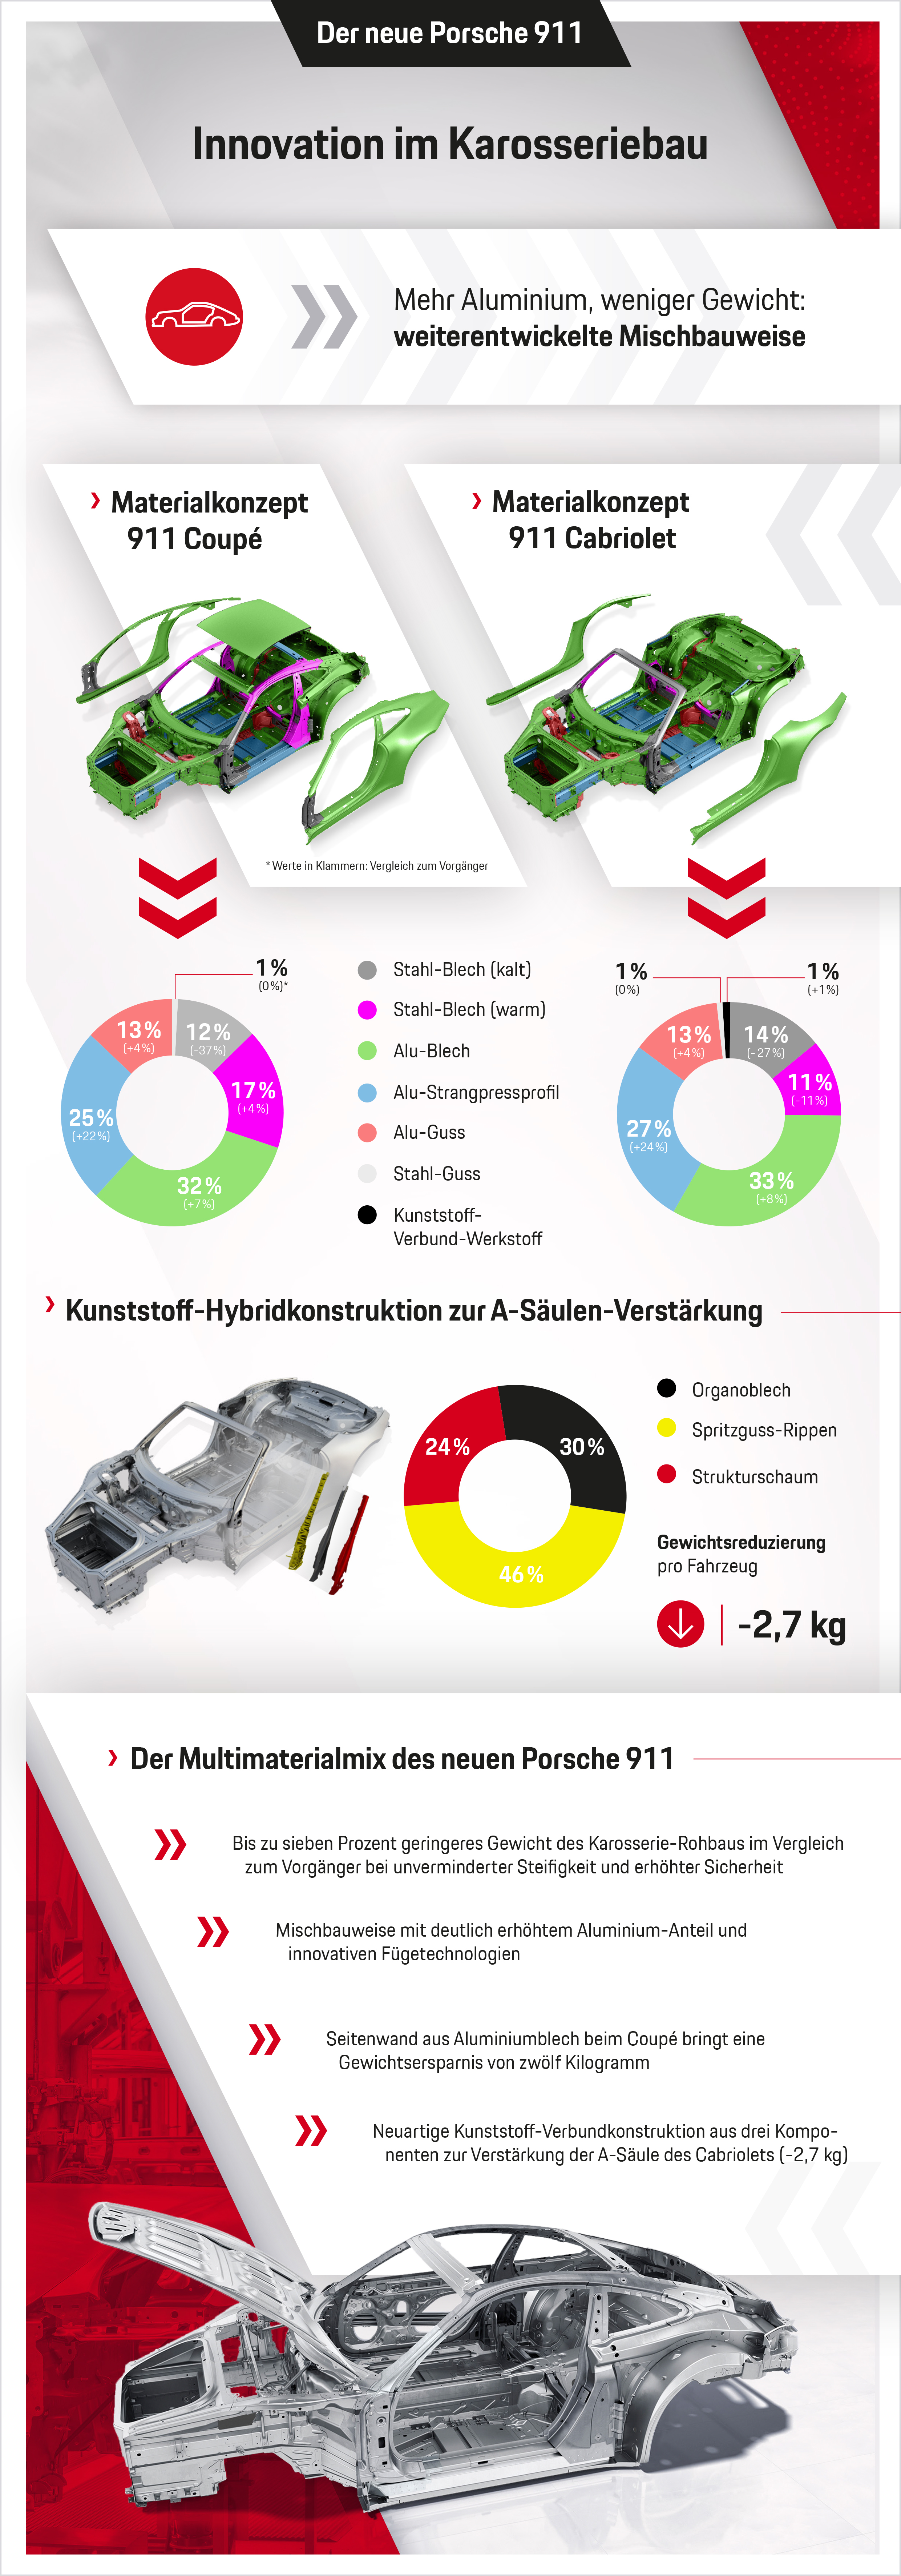 Innovationen im Karosseriebau beim neuen 911, Infografik, 11.04.2019, Porsche AG